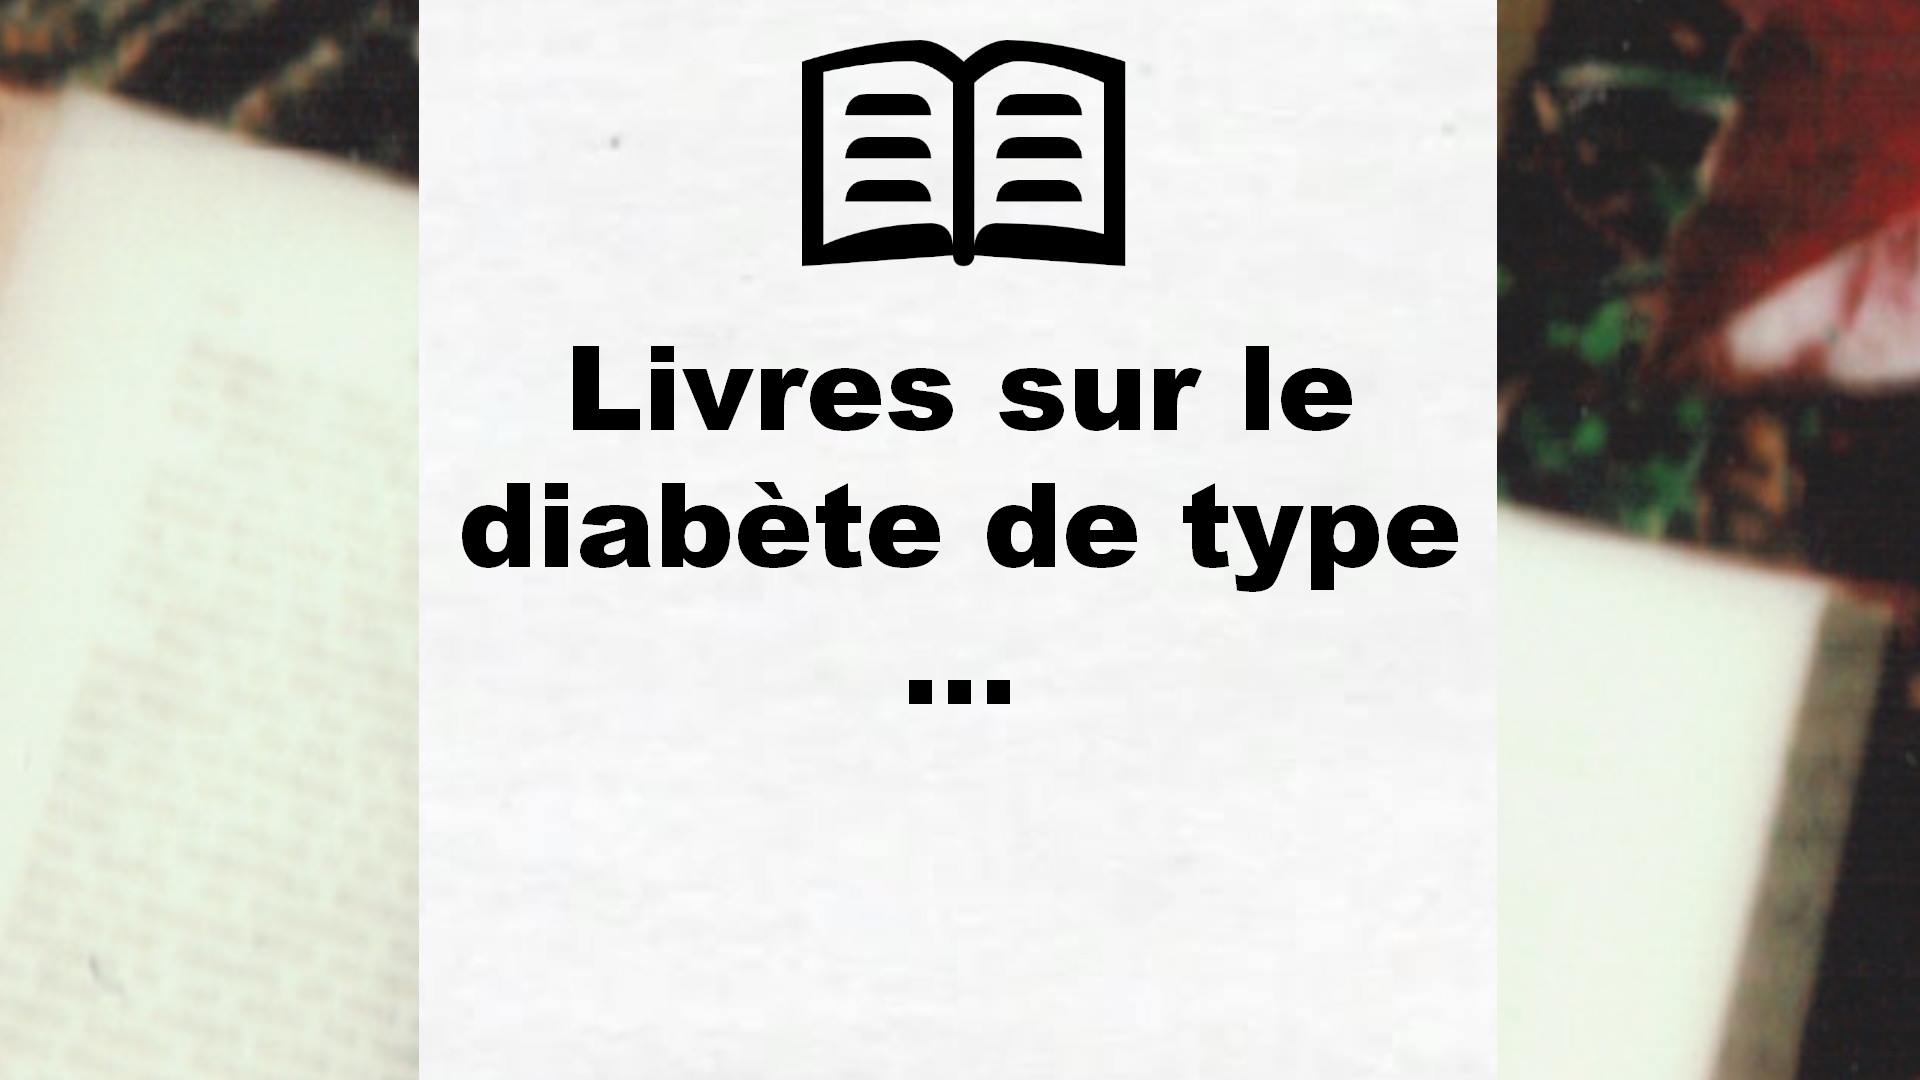 Livres sur le diabète de type 2